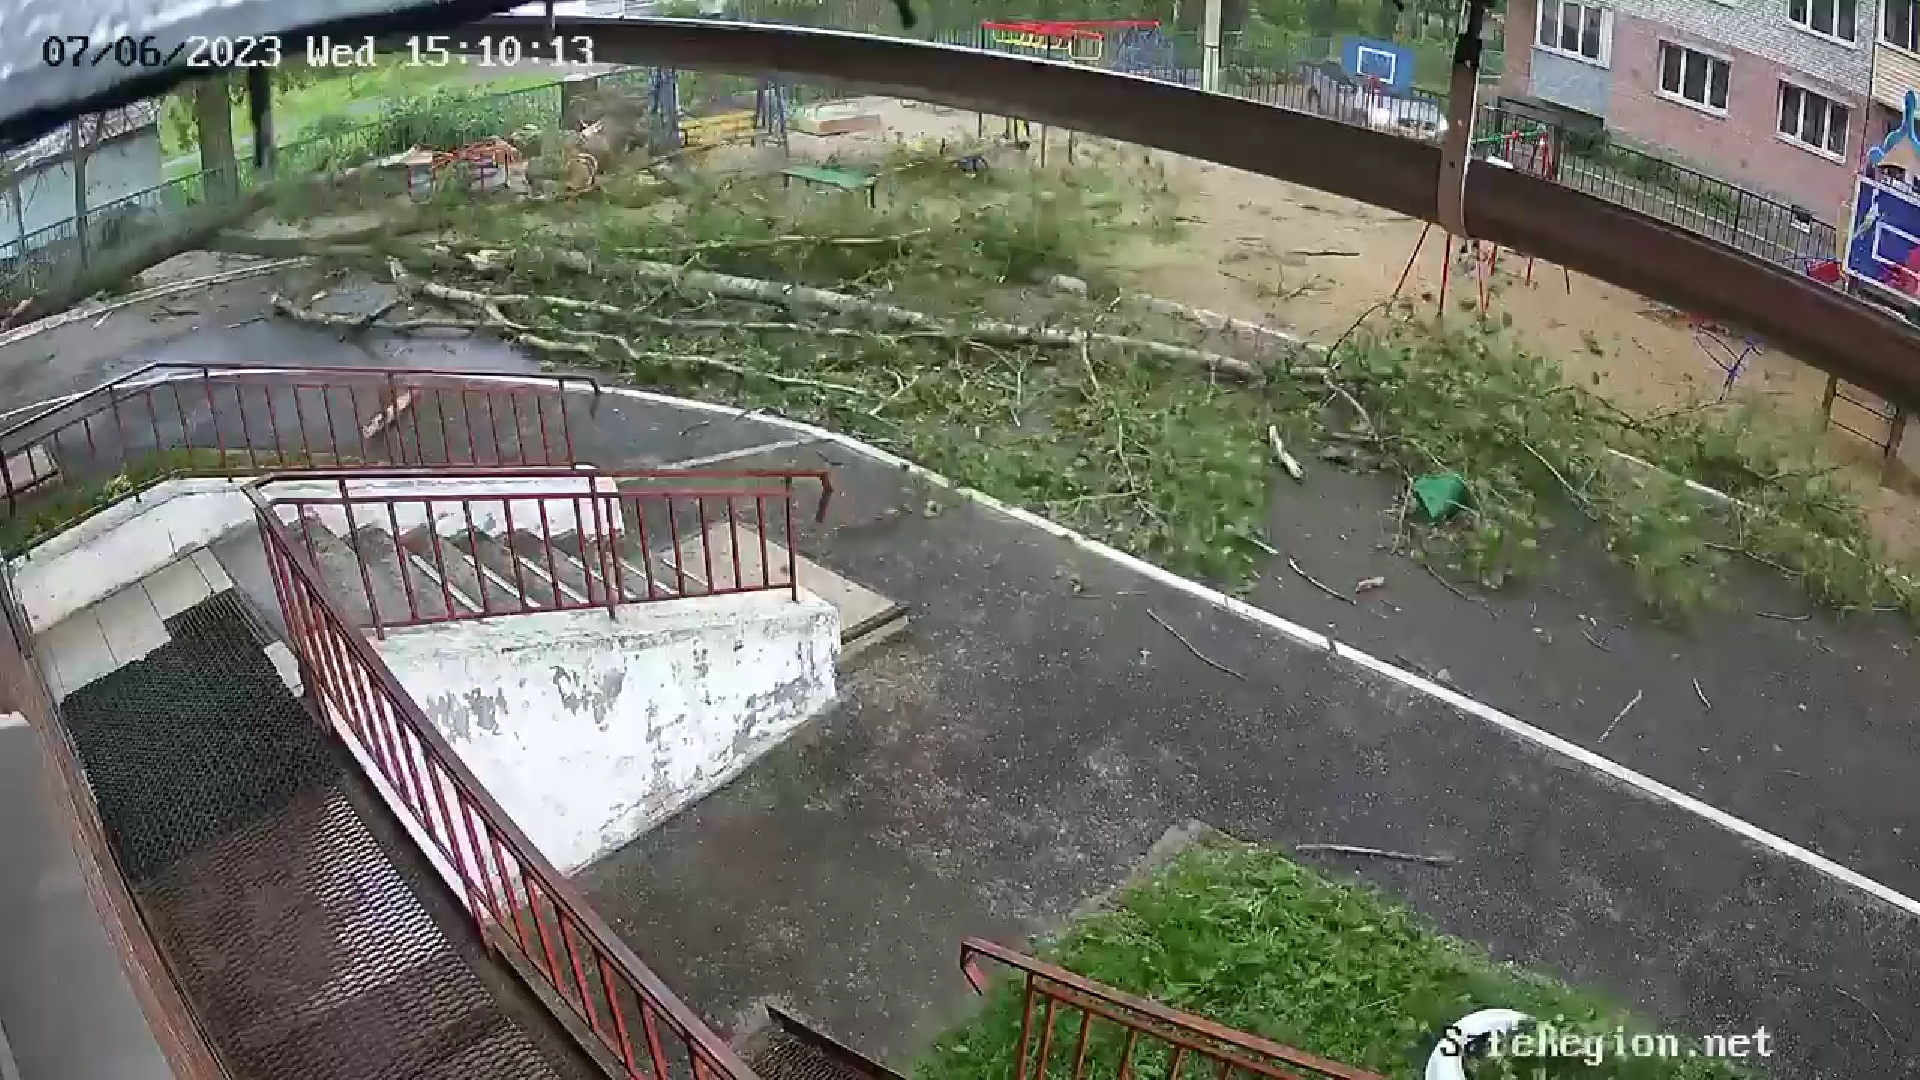 В сети появилось видео, как дерево рухнуло на площадку в Ярославле, где играли дети